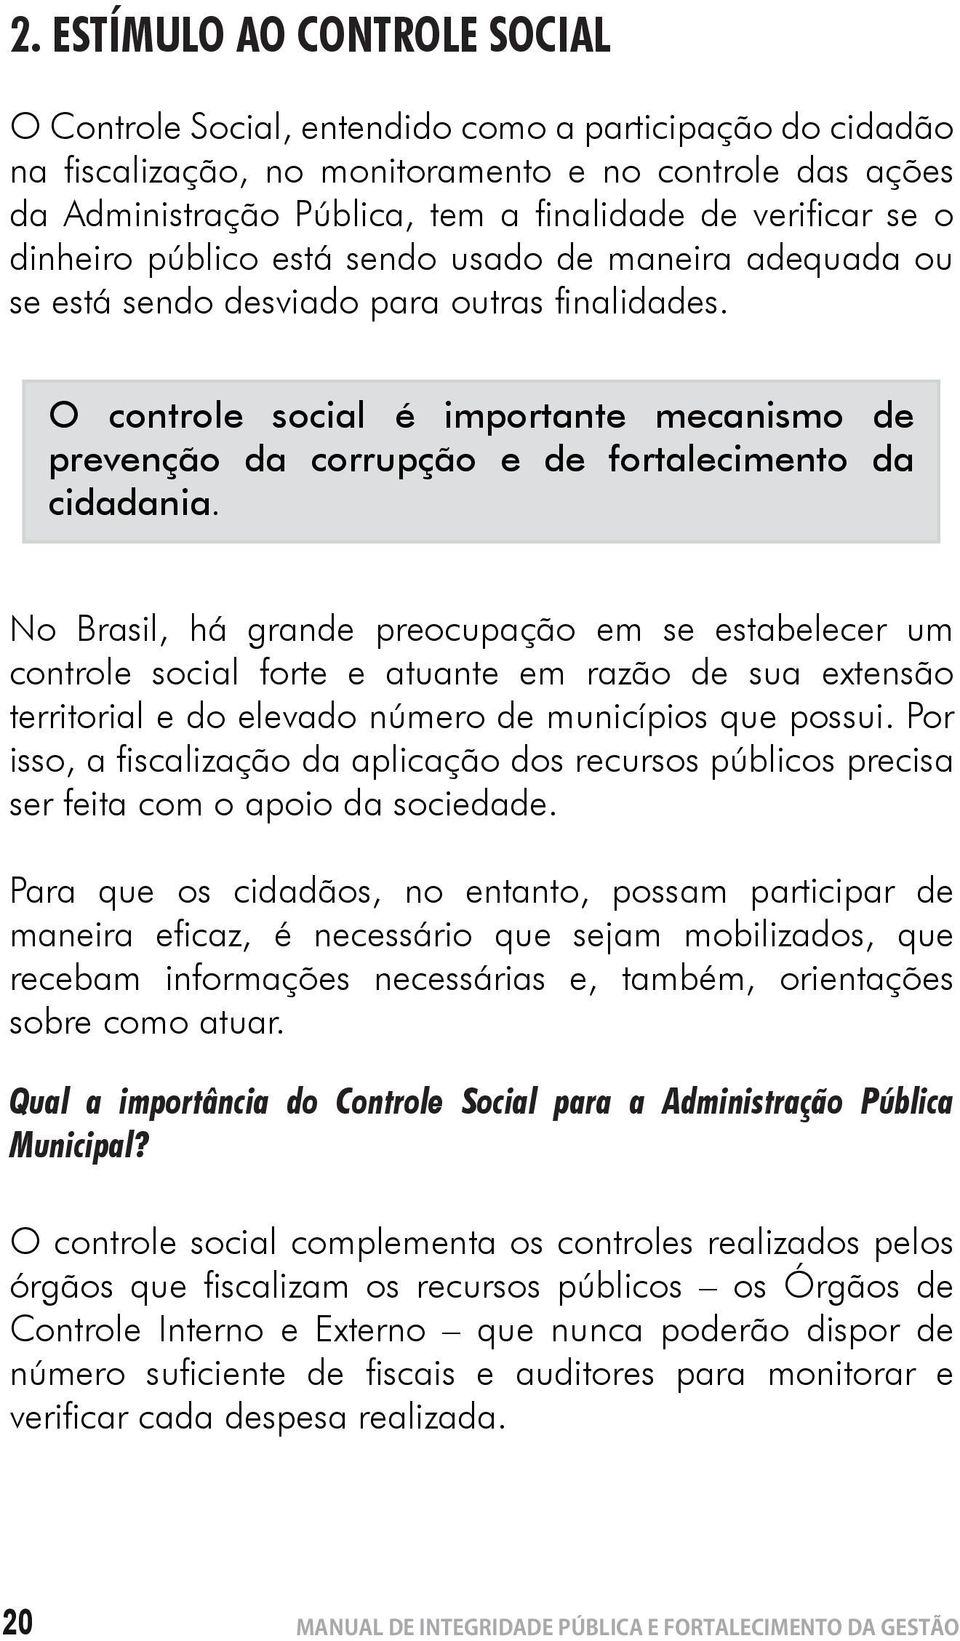 O controle social é importante mecanismo de prevenção da corrupção e de fortalecimento da cidadania.